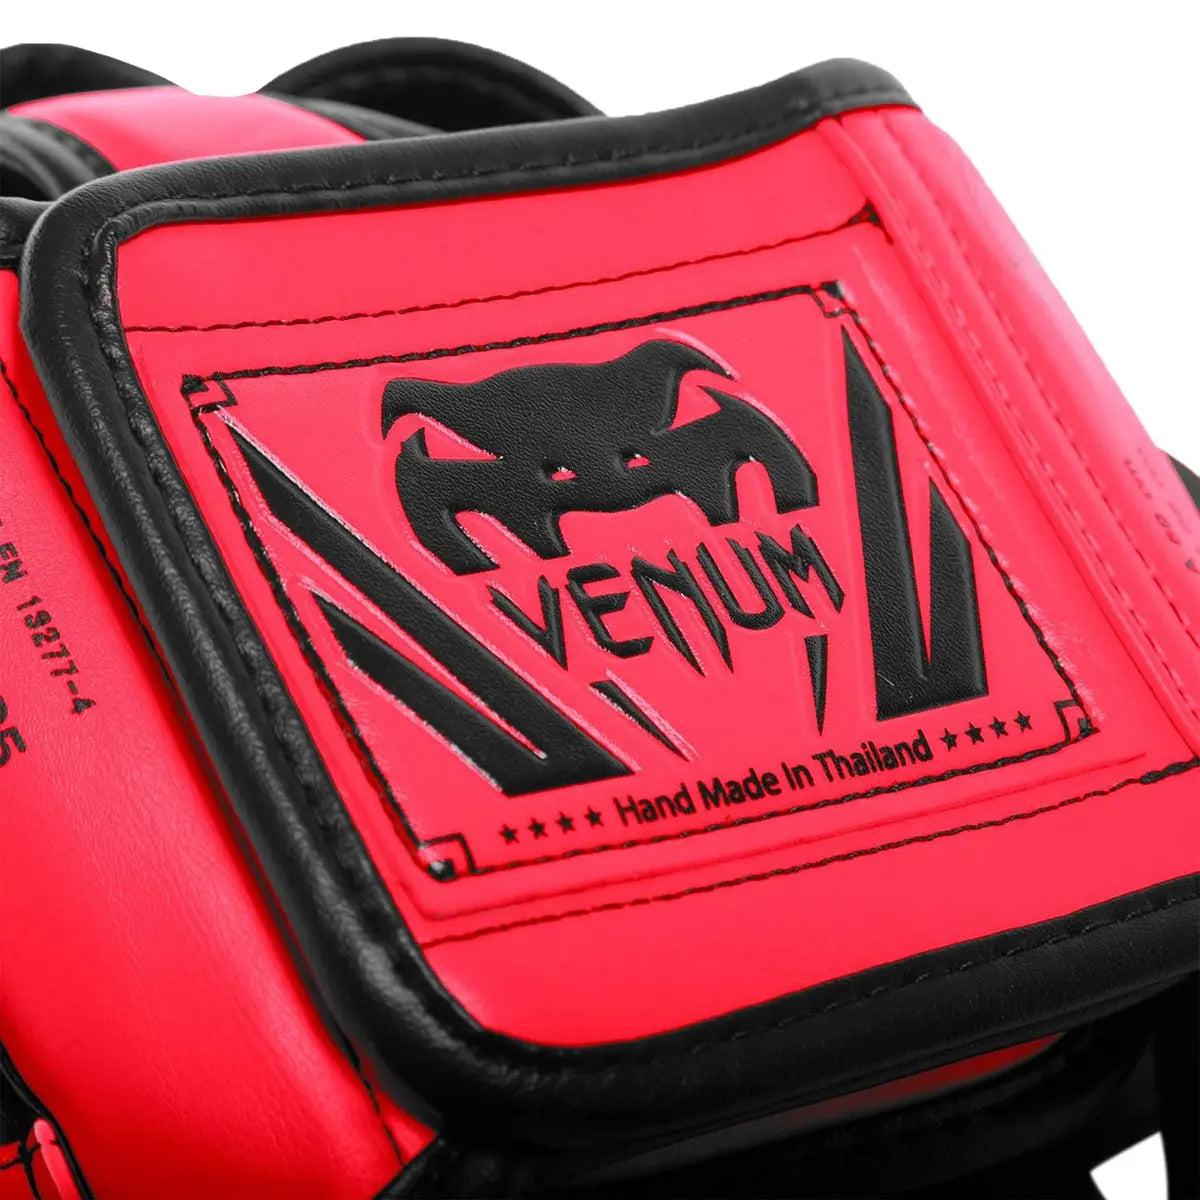 Venum Elite Boxing and MMA Protective Headgear Venum